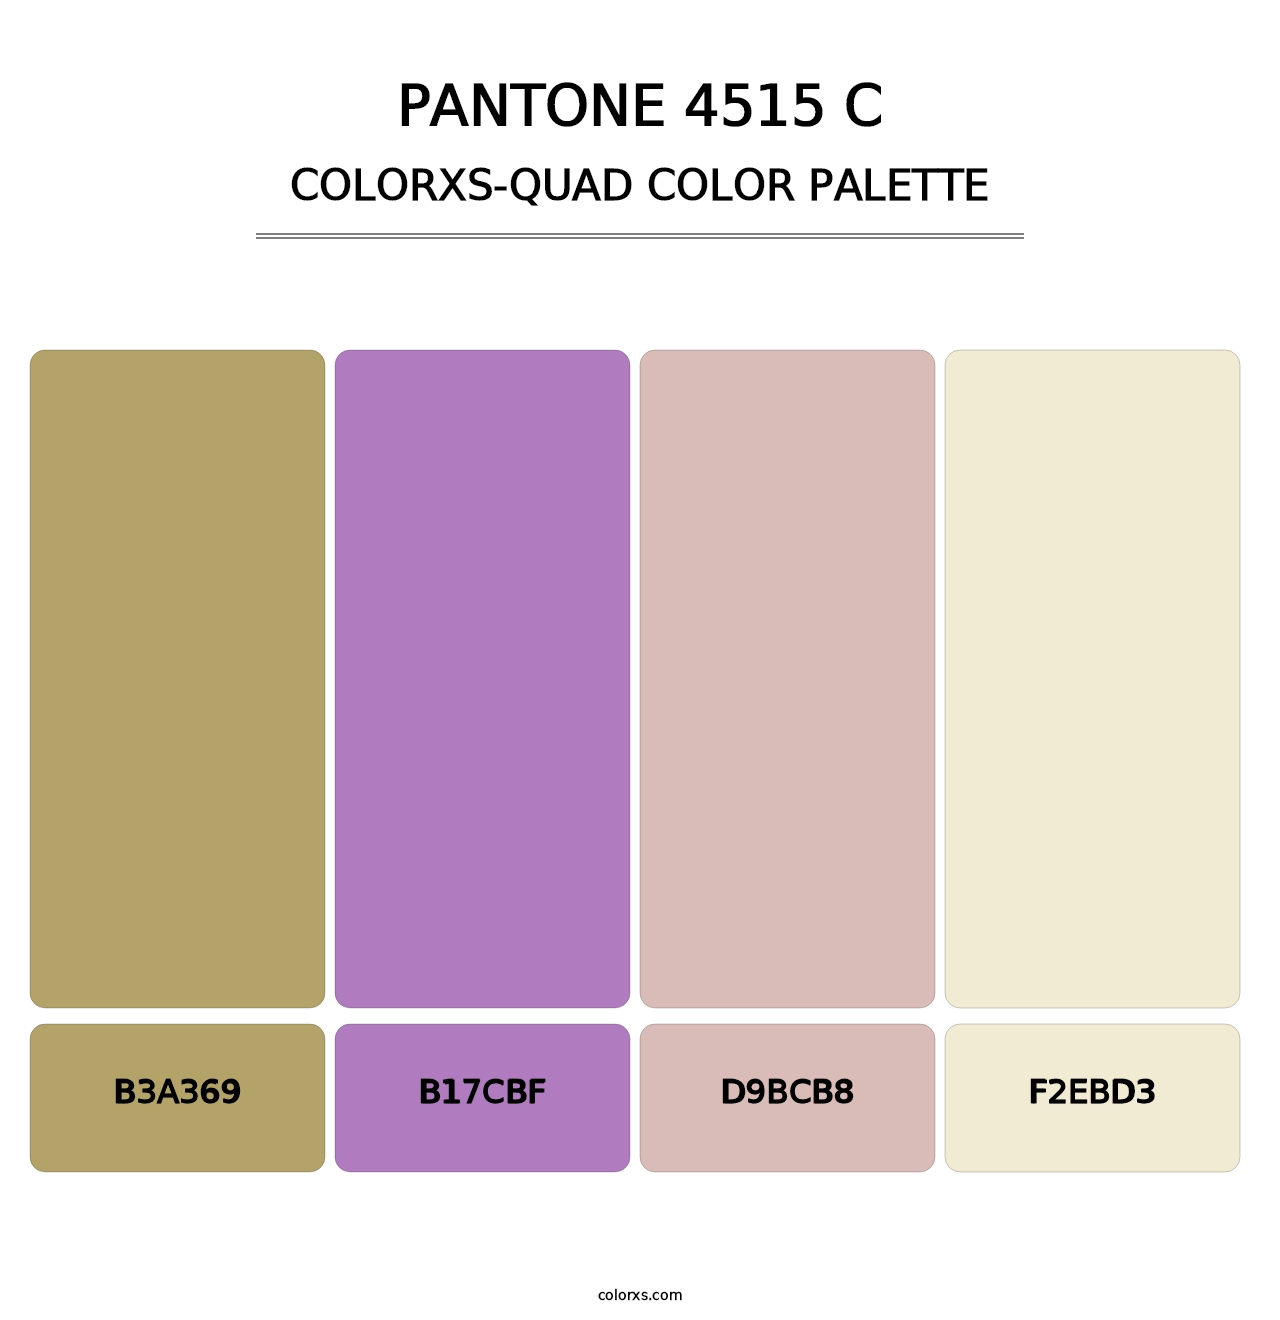 PANTONE 4515 C - Colorxs Quad Palette